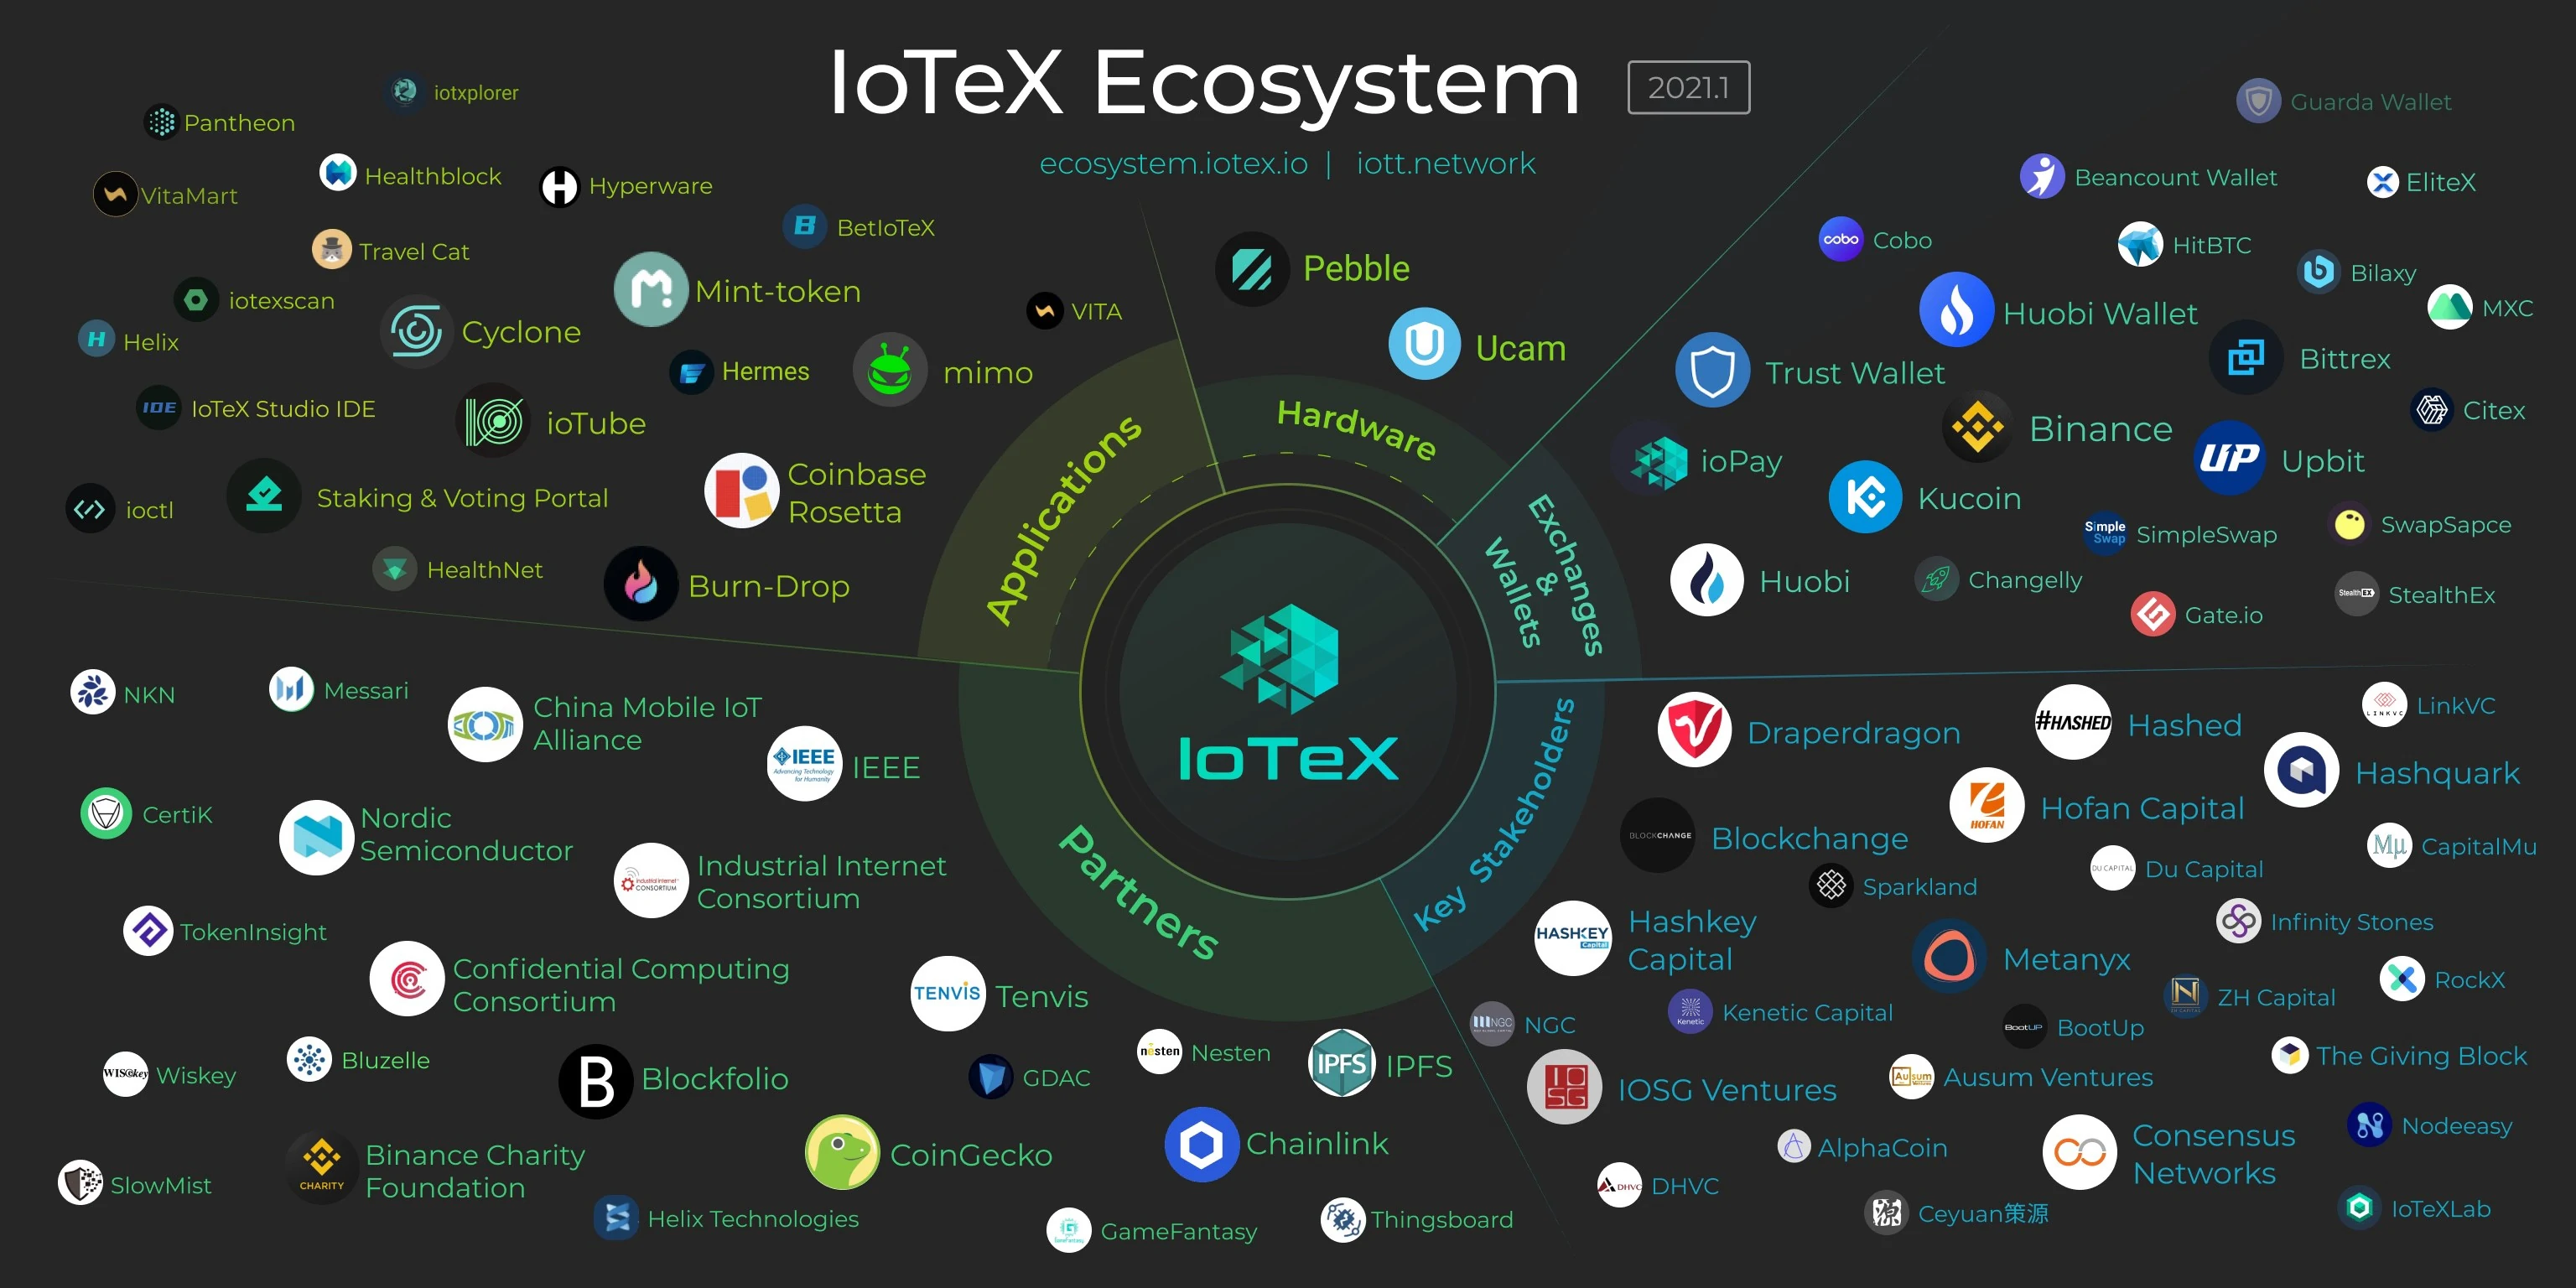 IoTeX ecosystems